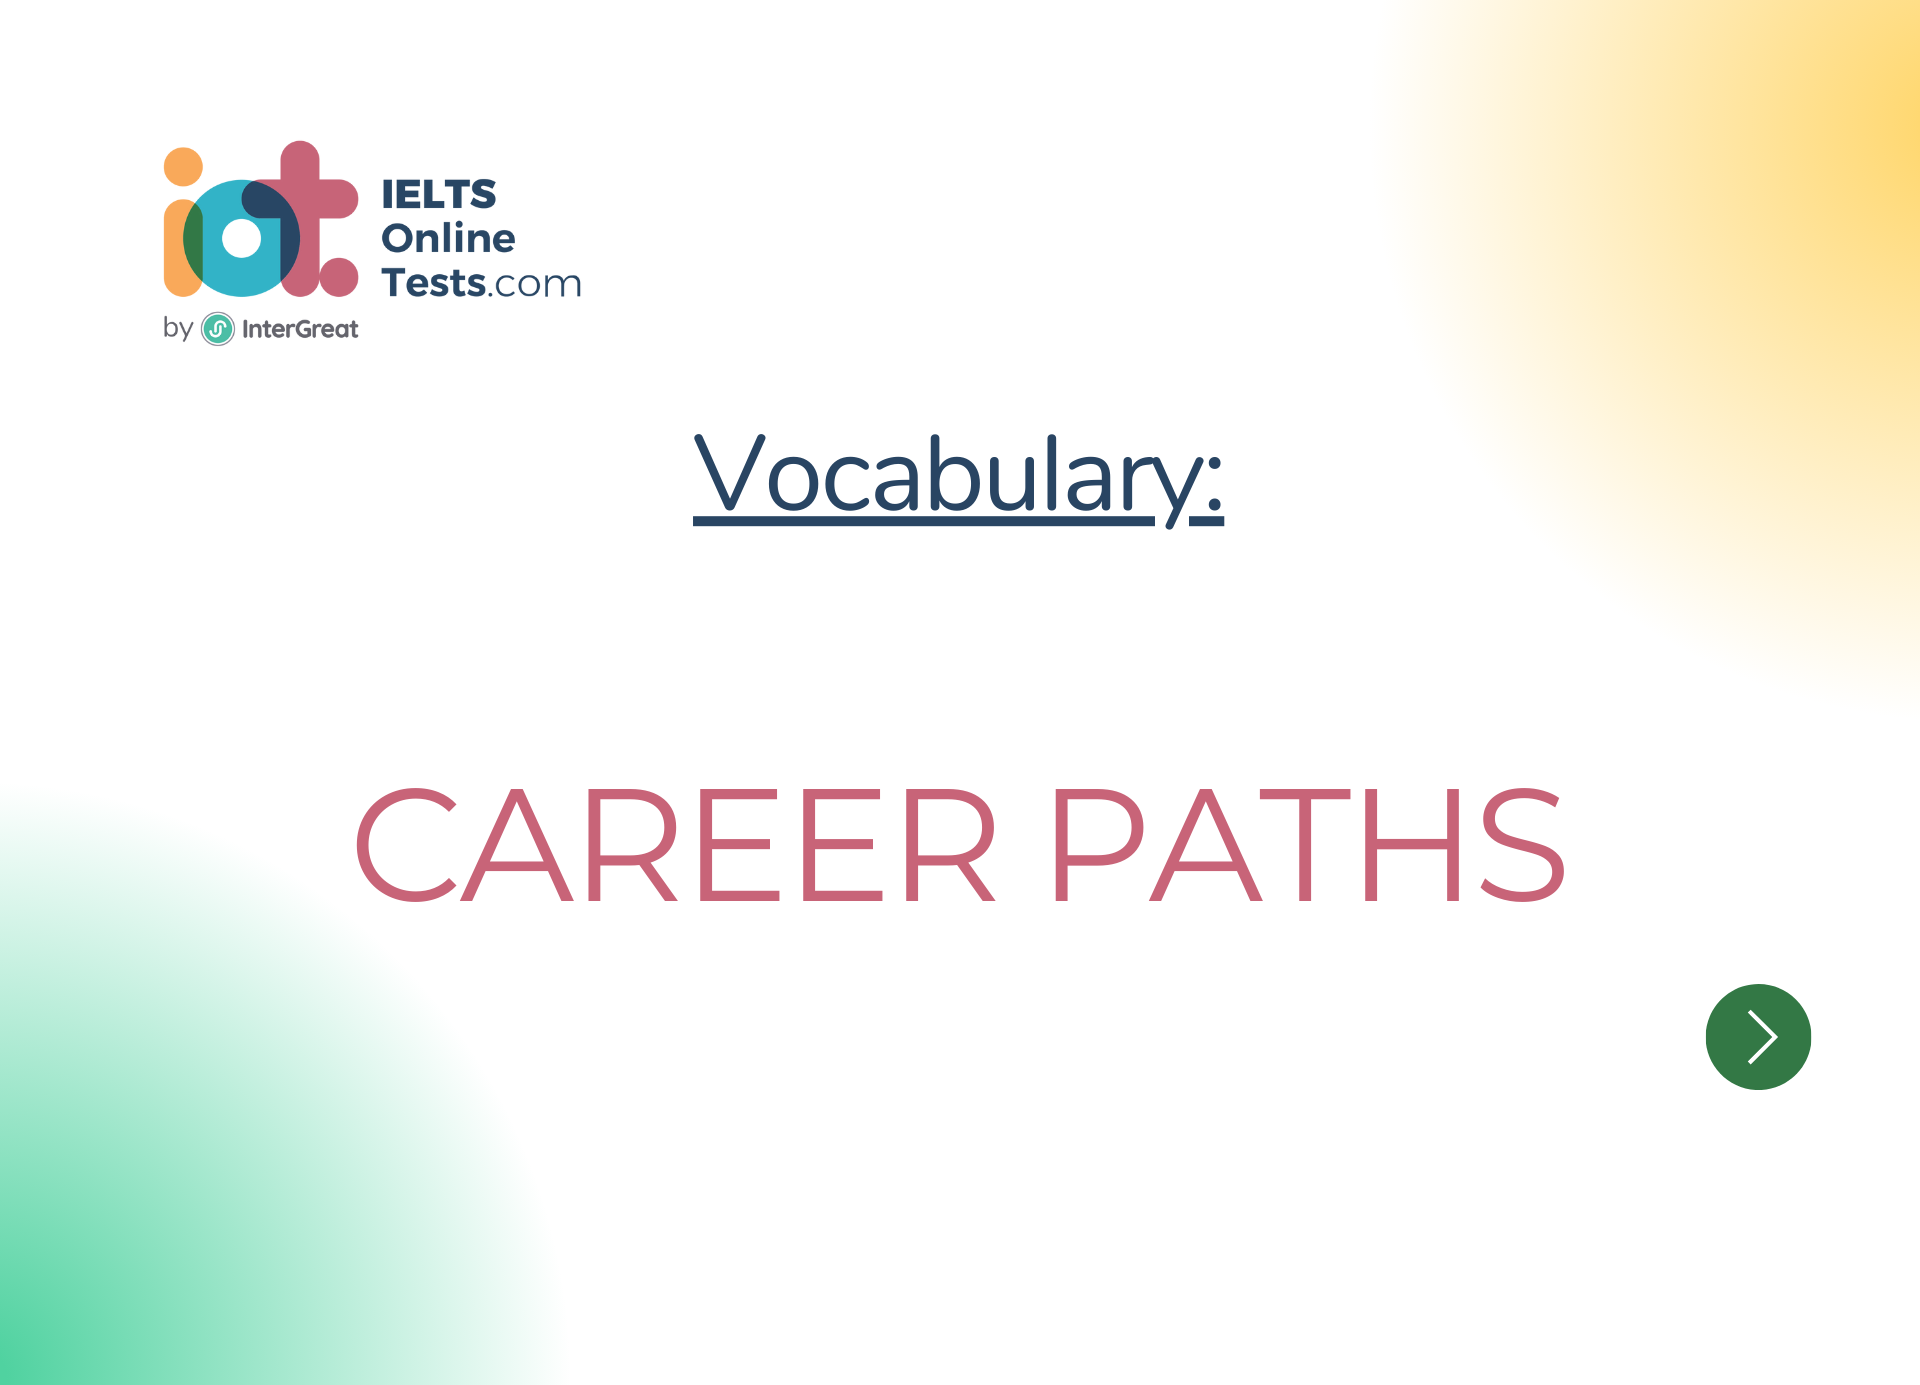 Lộ trình nghề nghiệp (Career paths)